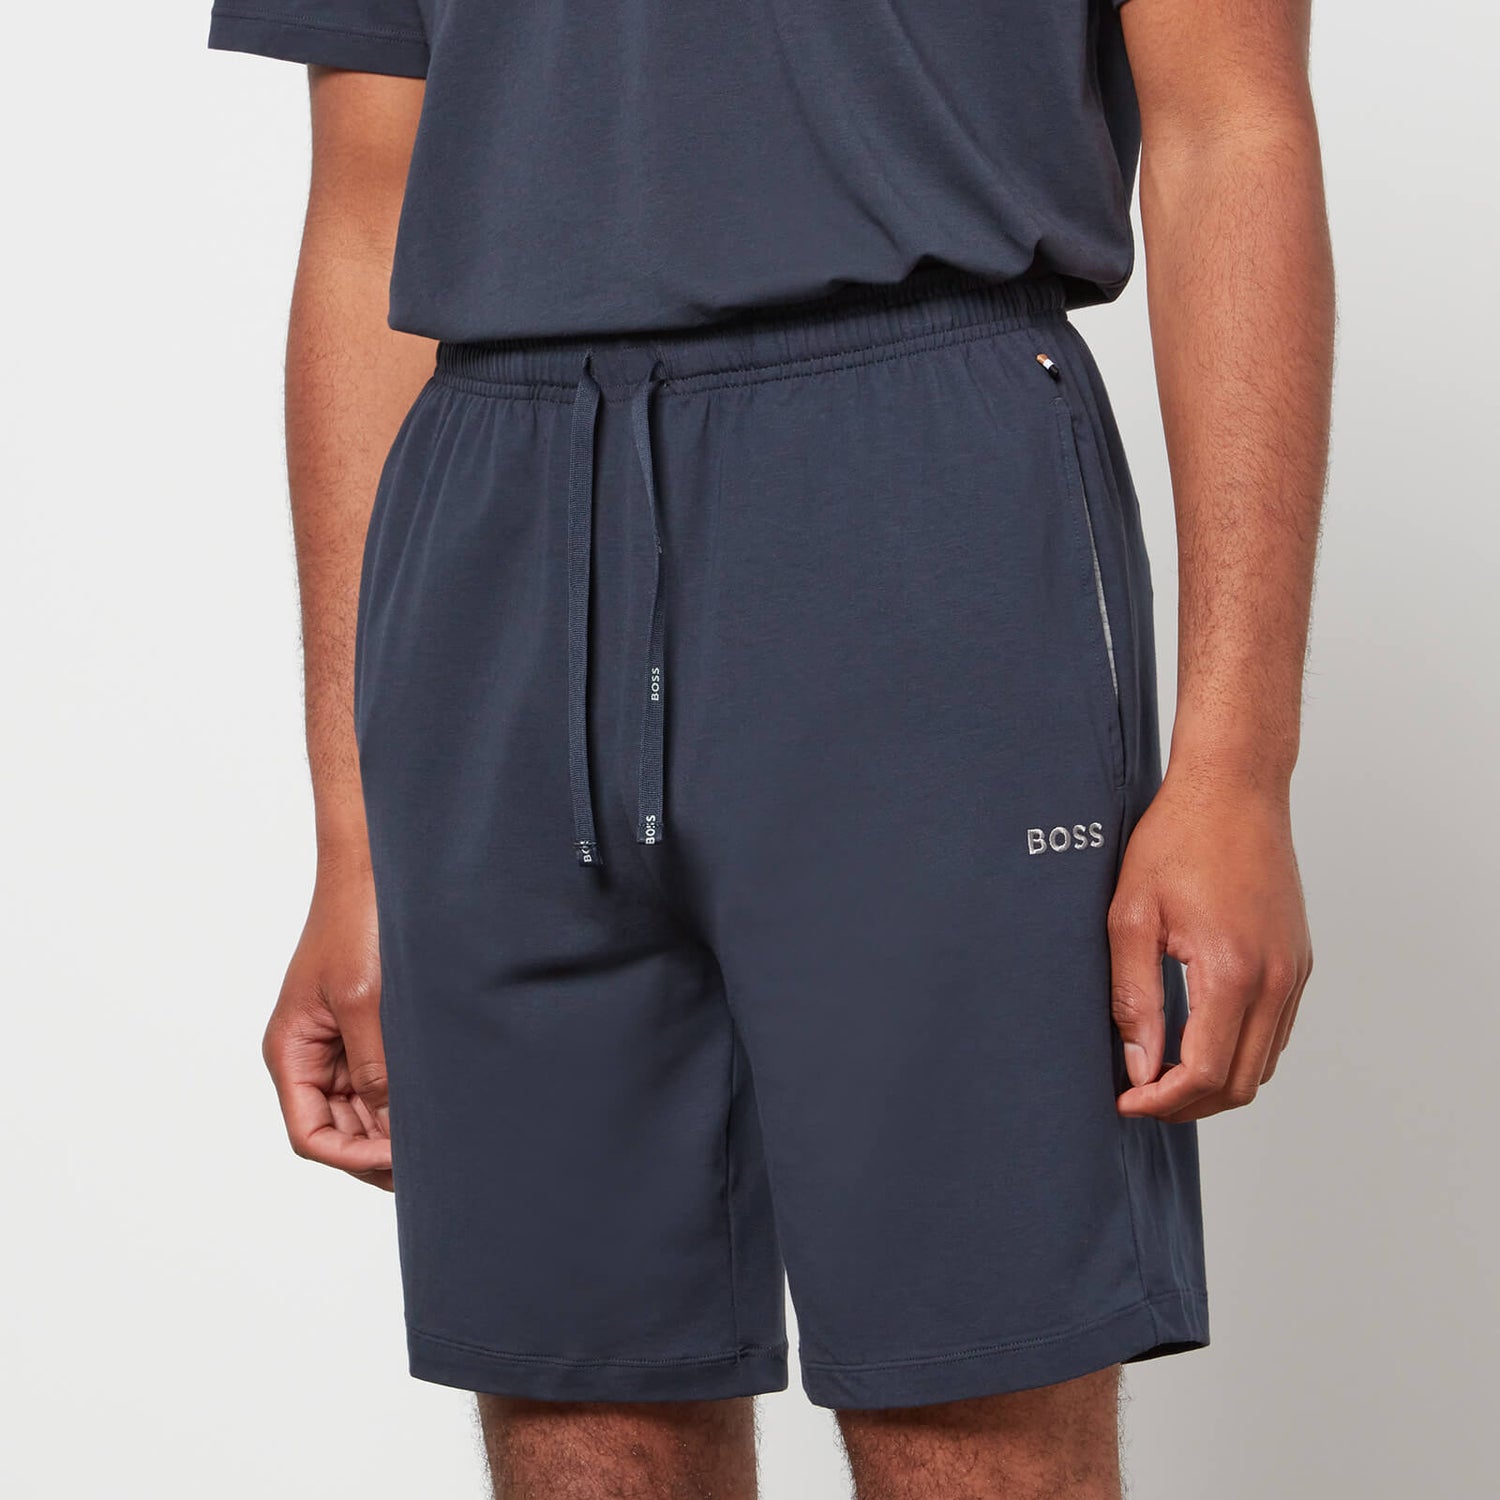 BOSS Bodywear Men's Mix&Match Shorts - Dark Blue